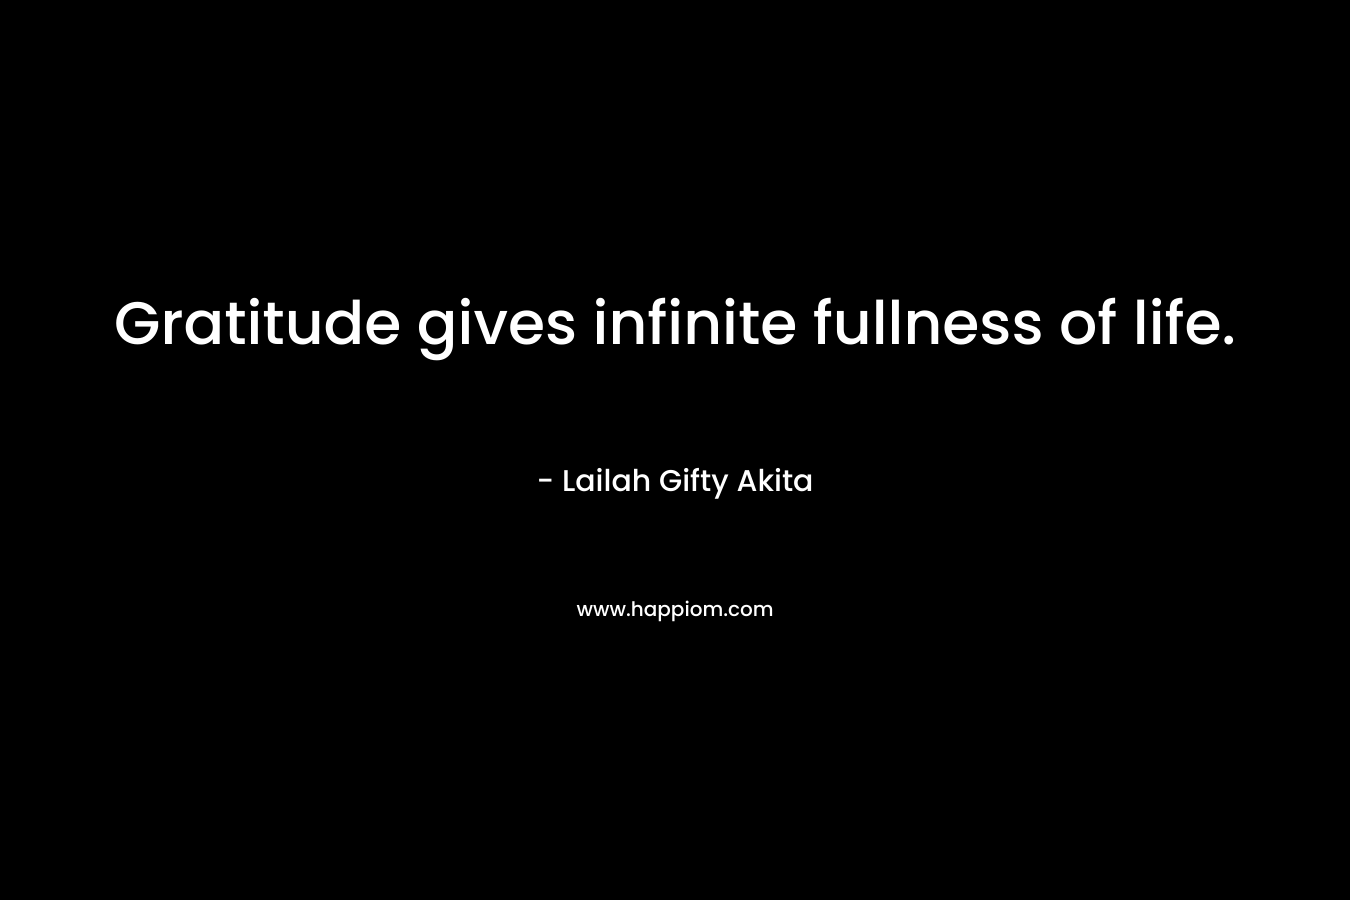 Gratitude gives infinite fullness of life.